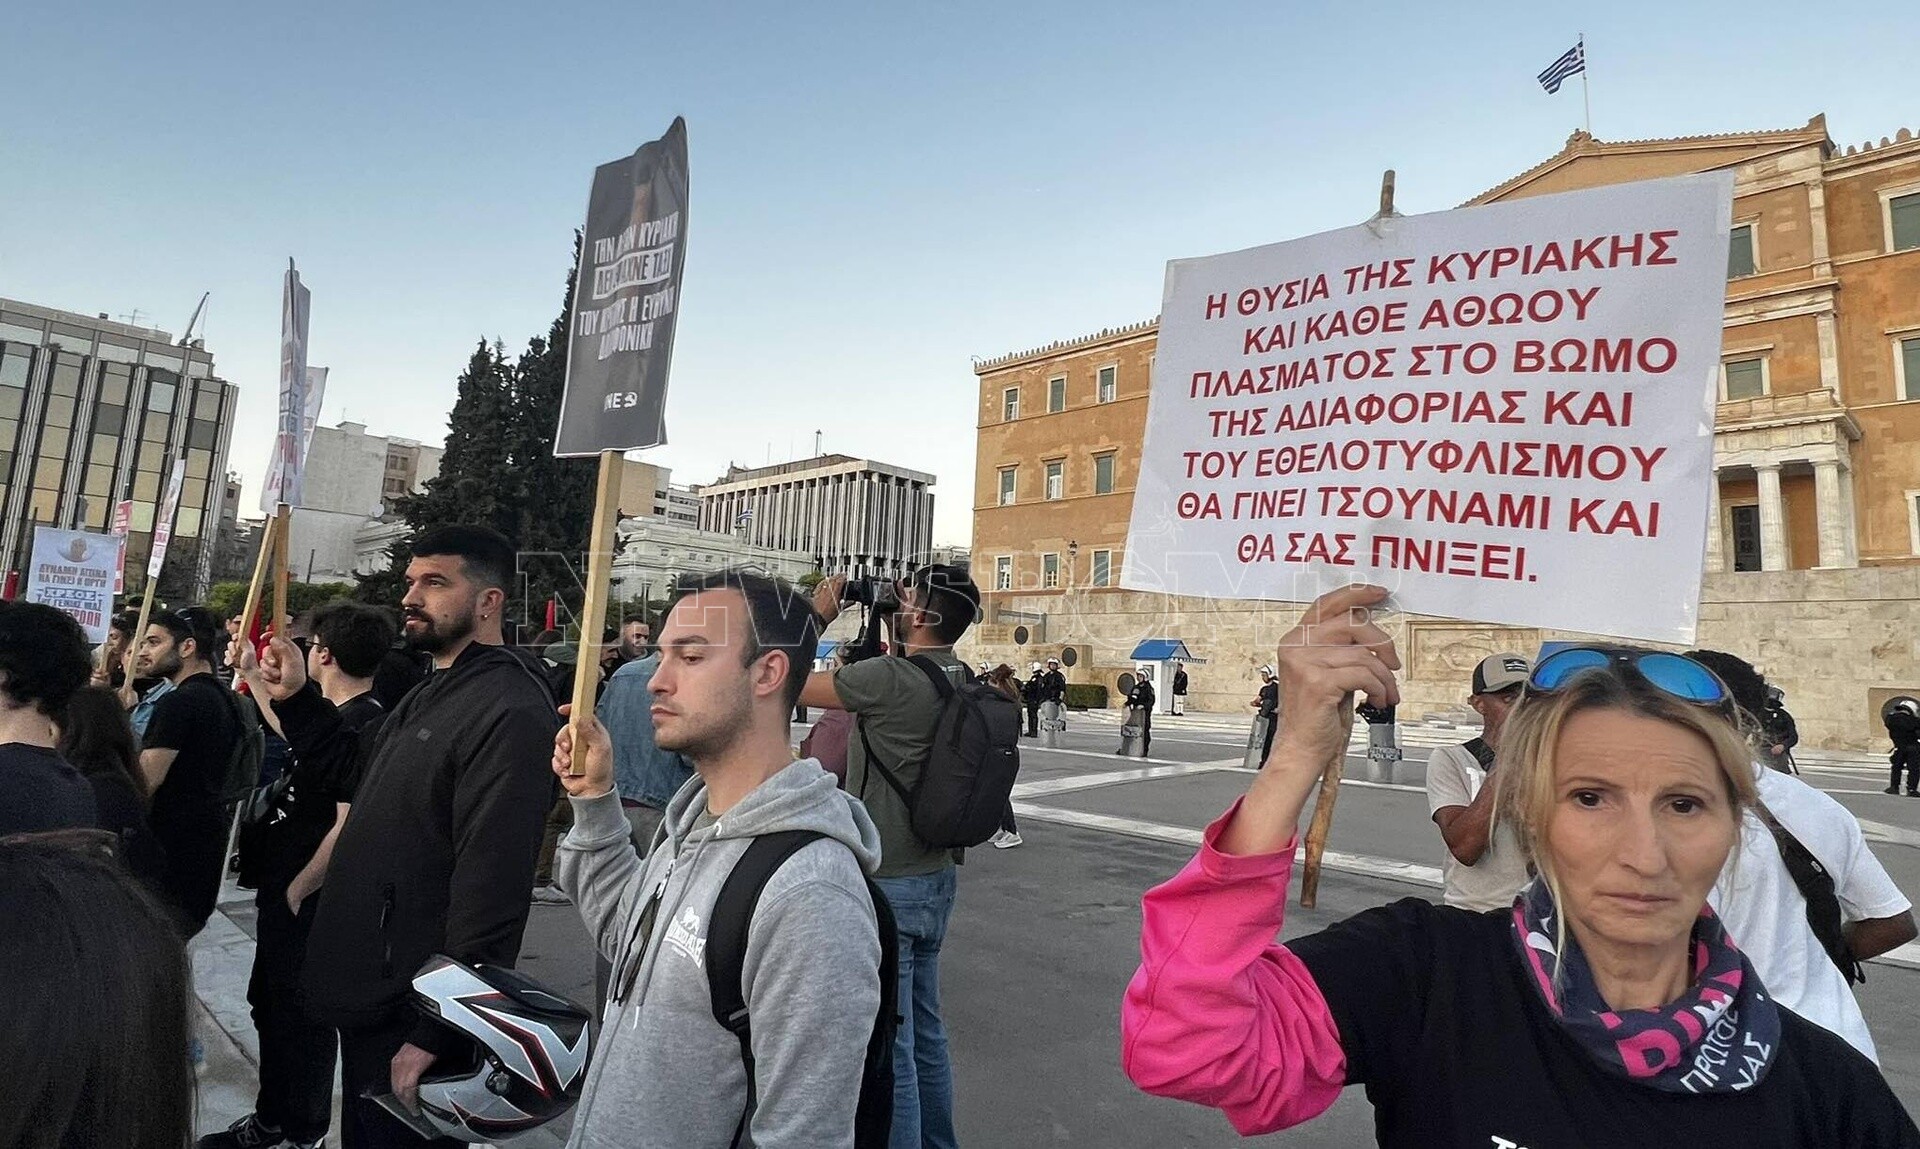 Σύνταγμα: Συγκέντρωση διαμαρτυρίας για τη δολοφονία της 28χρονης στους Αγίους Αναργύρους